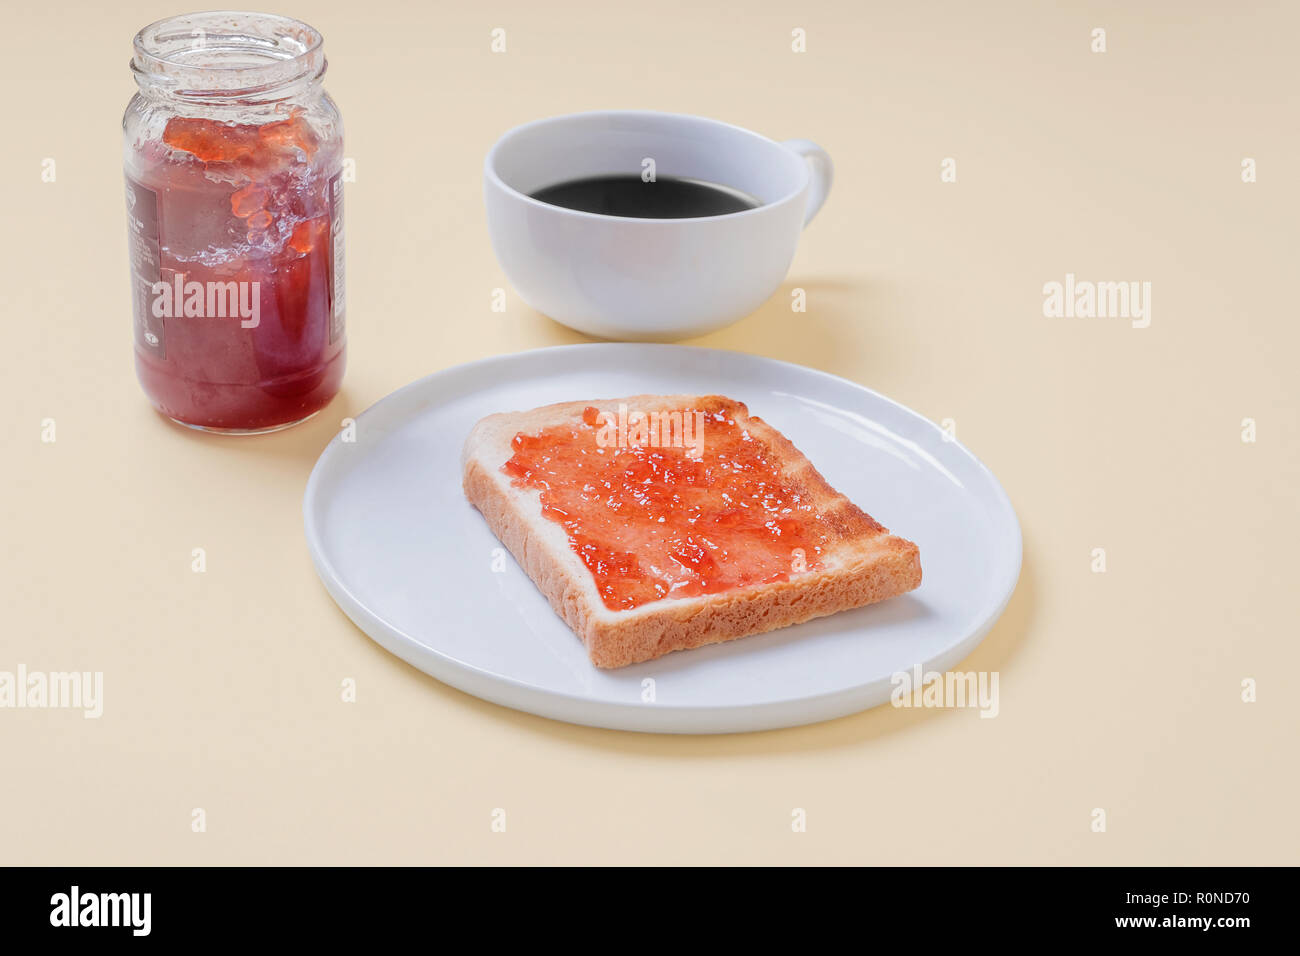 Fetta di pane tostato con marmellata di fragola jelly su una piastra bianca con una tazza di caffè e un barattolo di conserva su un vintage tan sfondo con spazio di copia Foto Stock